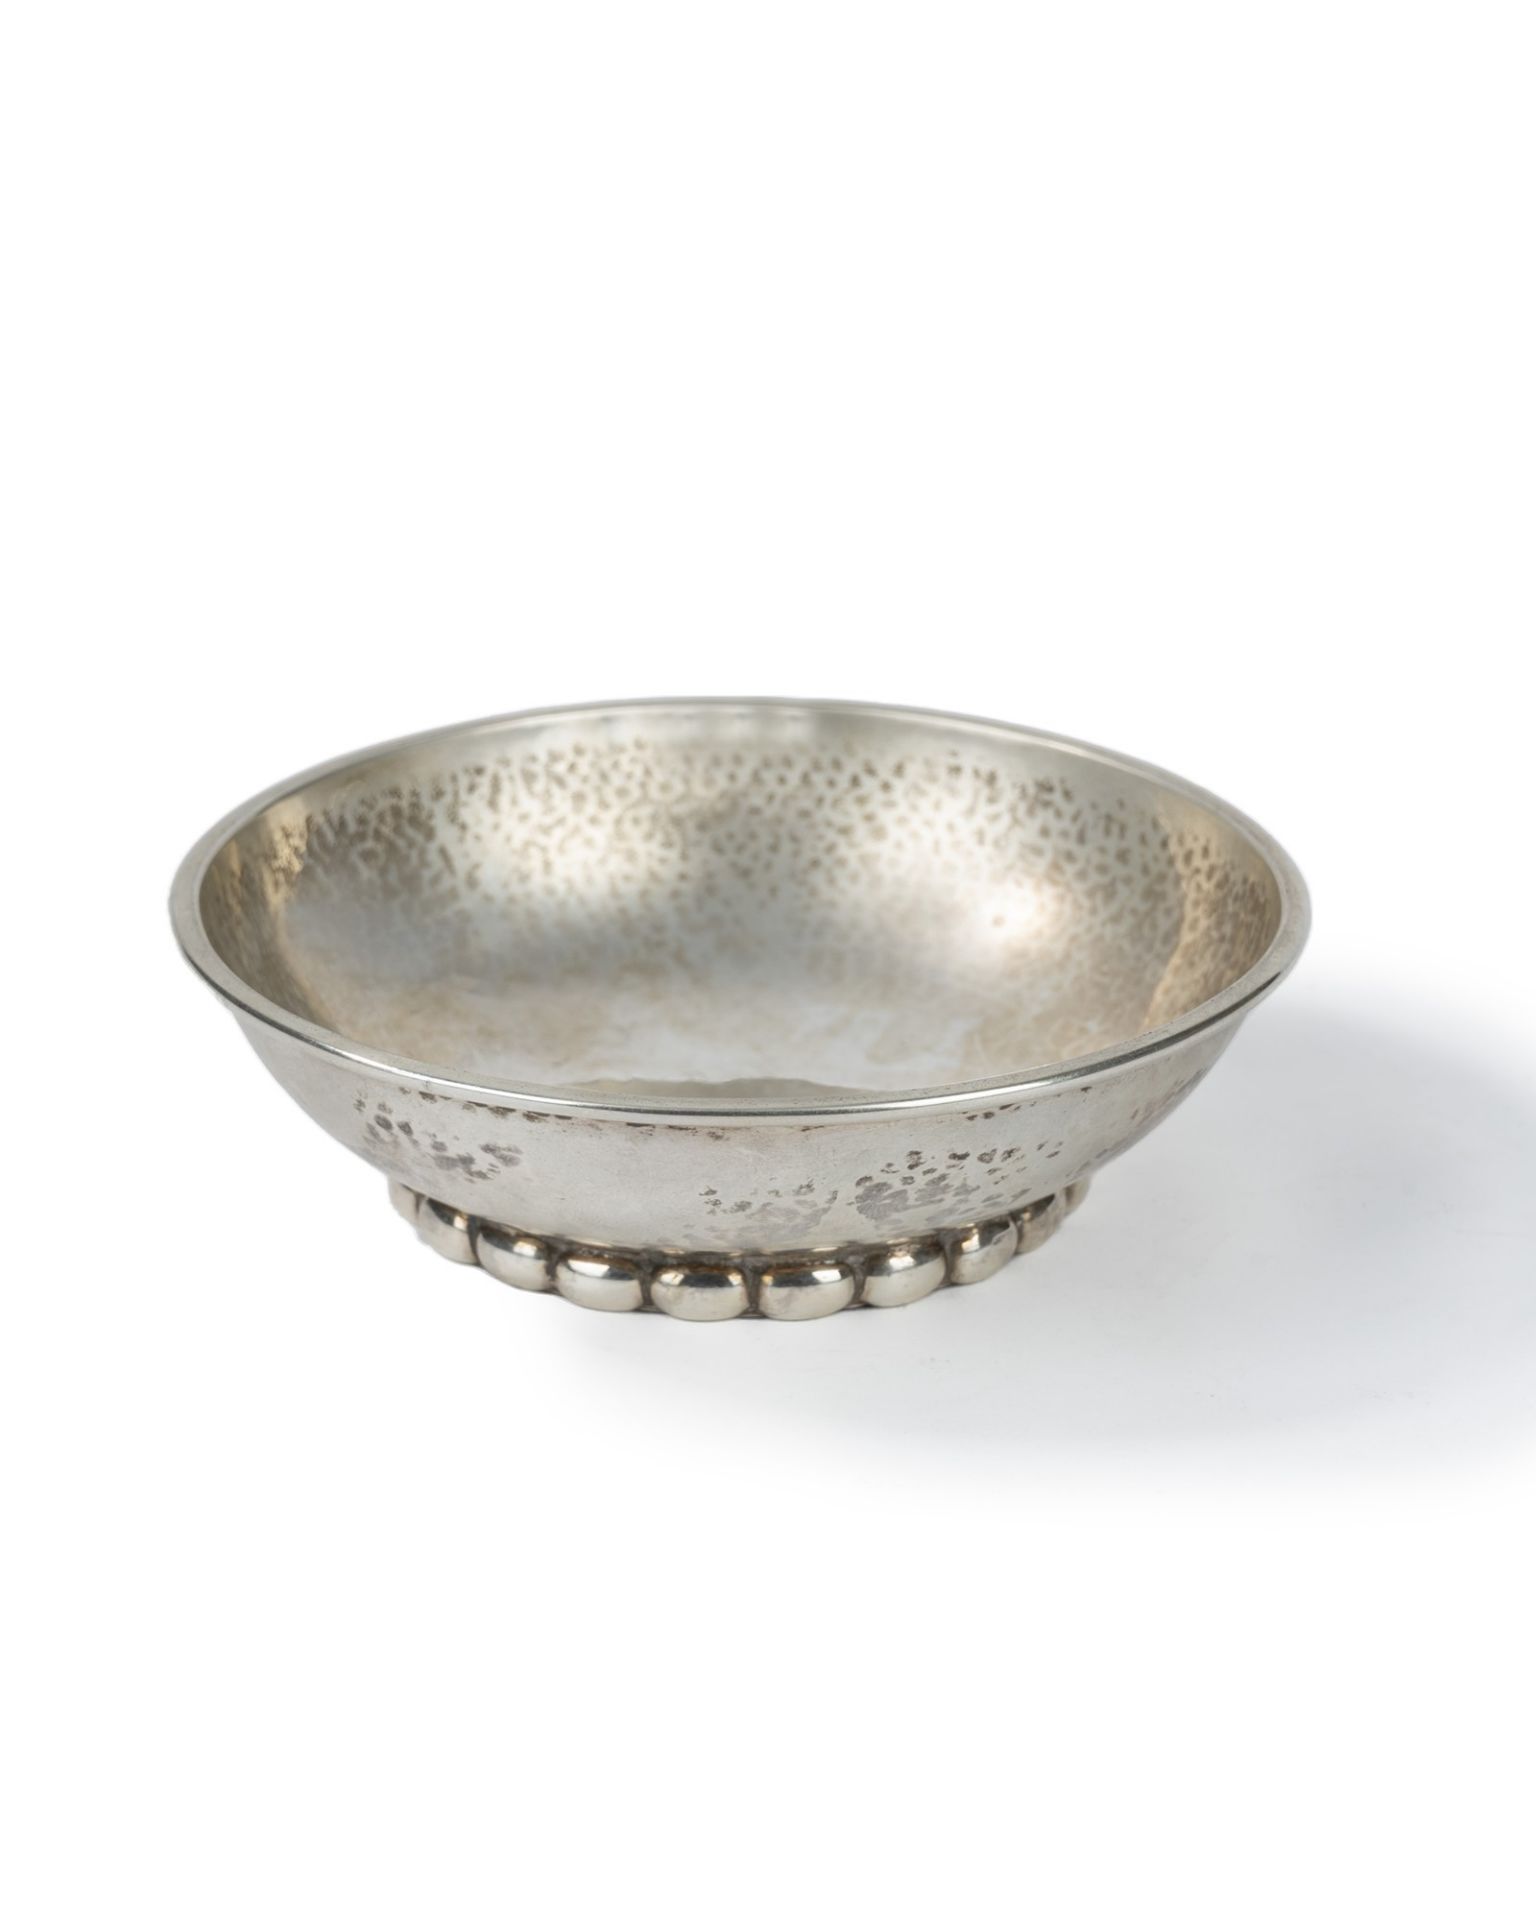 Small silver bowl, Denmark, 1927